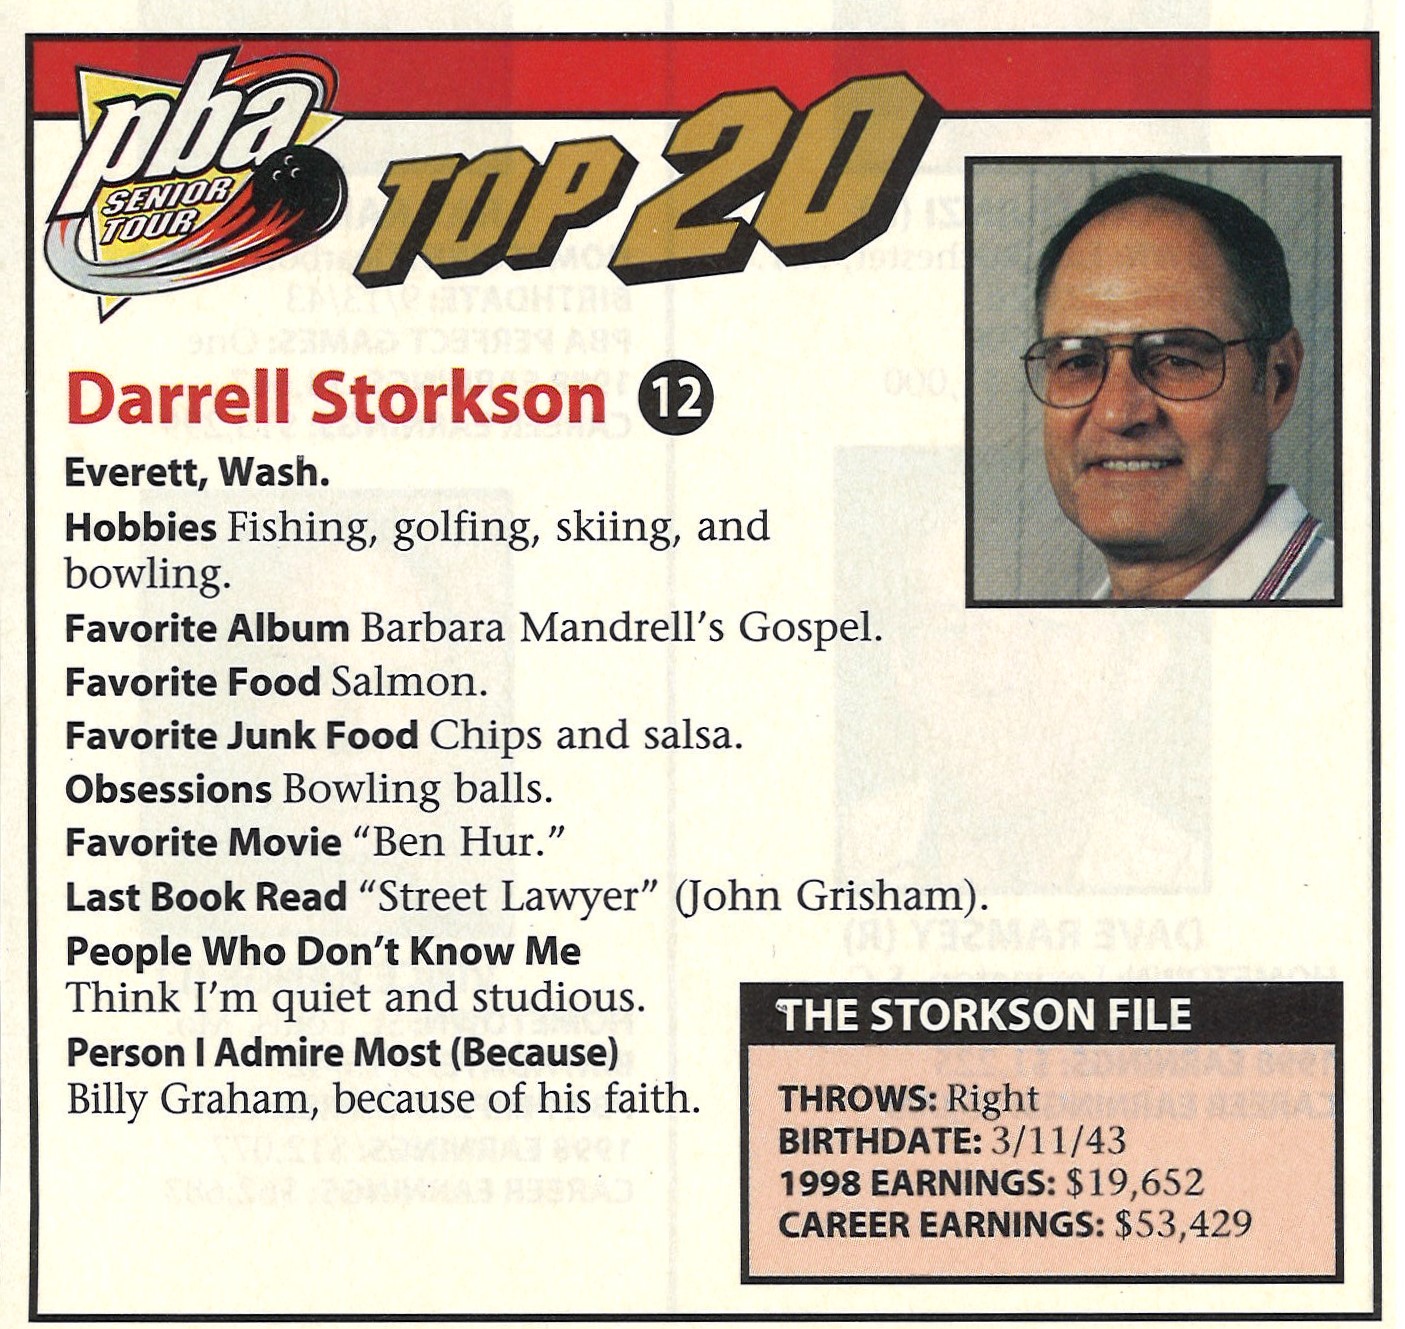 Darrell Storkson